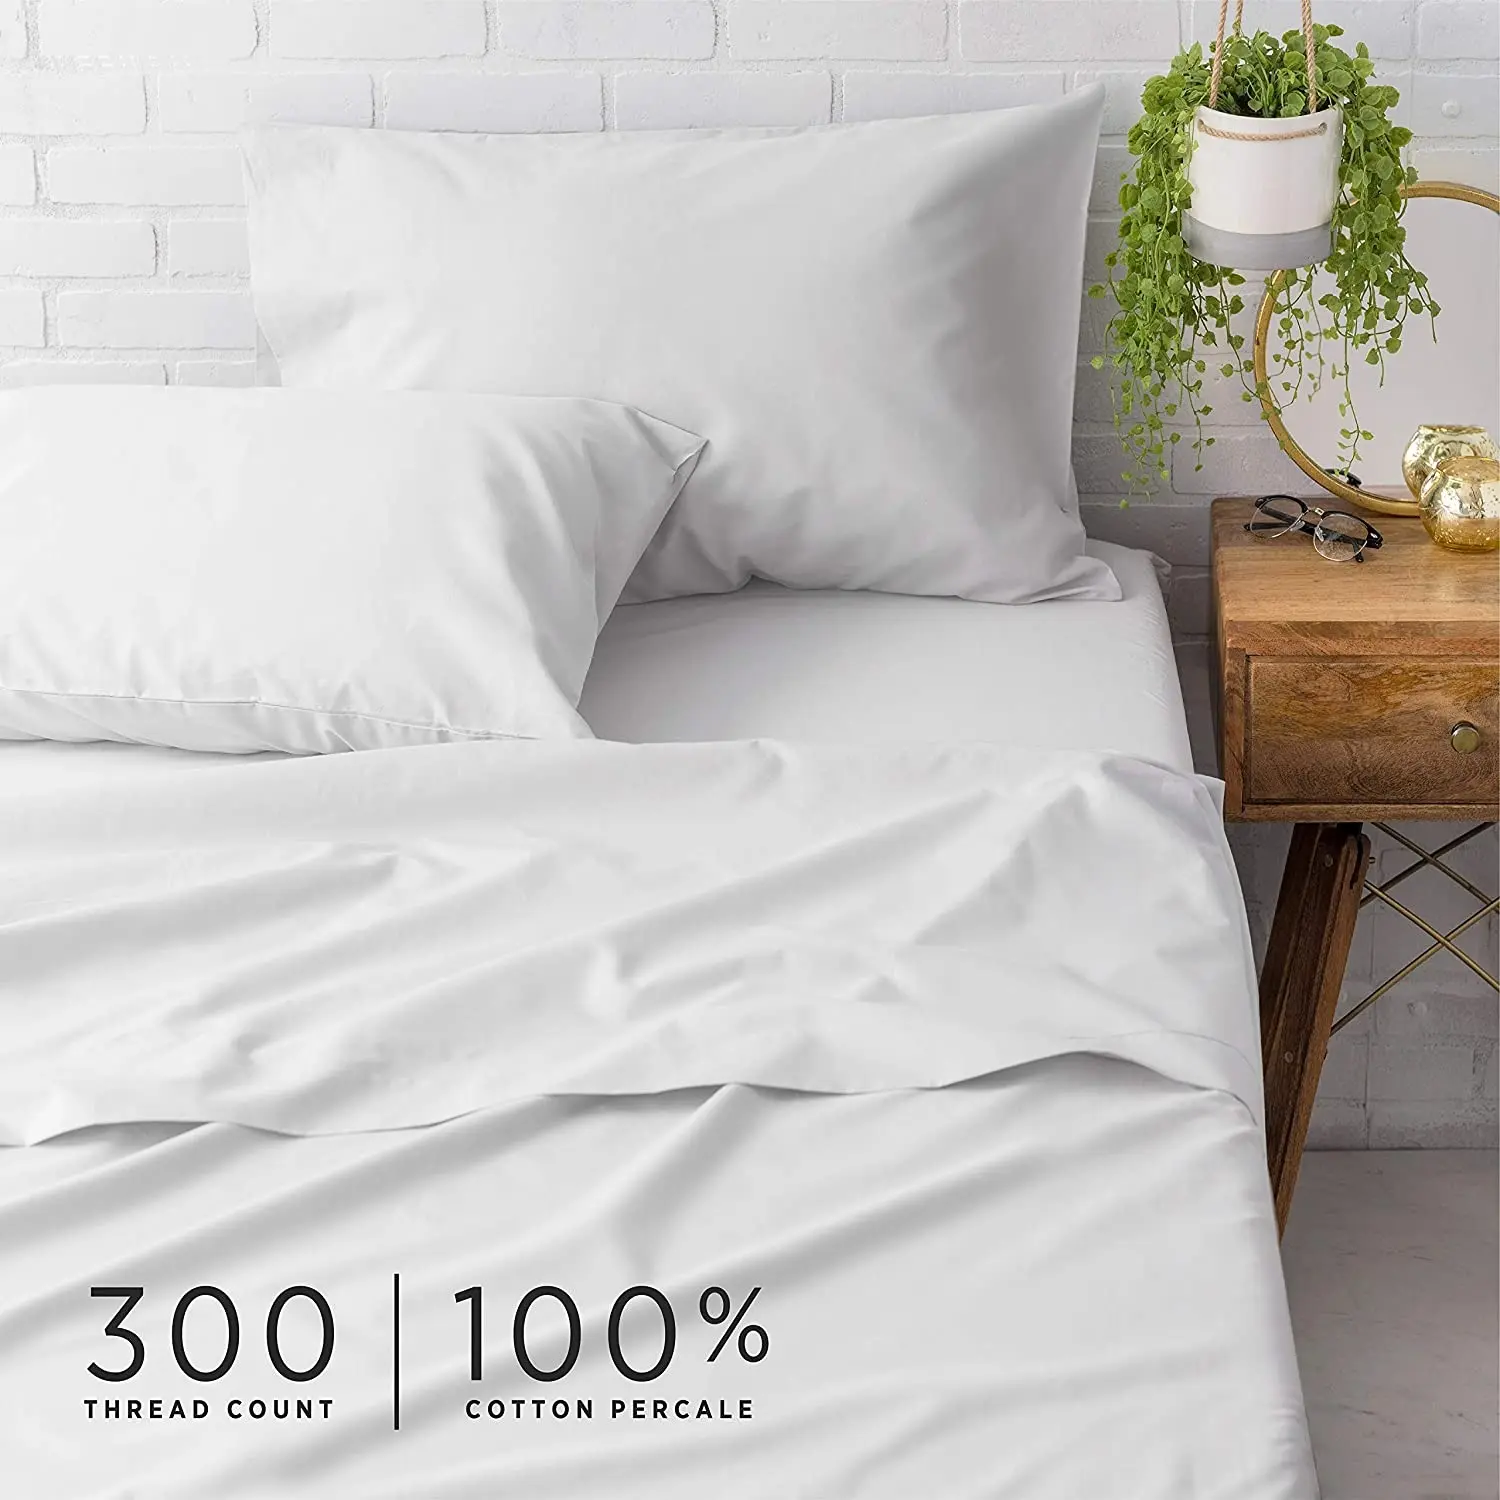 Juego de sábanas de algodón orgánico para hotel, 100% algodón egipcio, 5 estrellas, 300 hilos